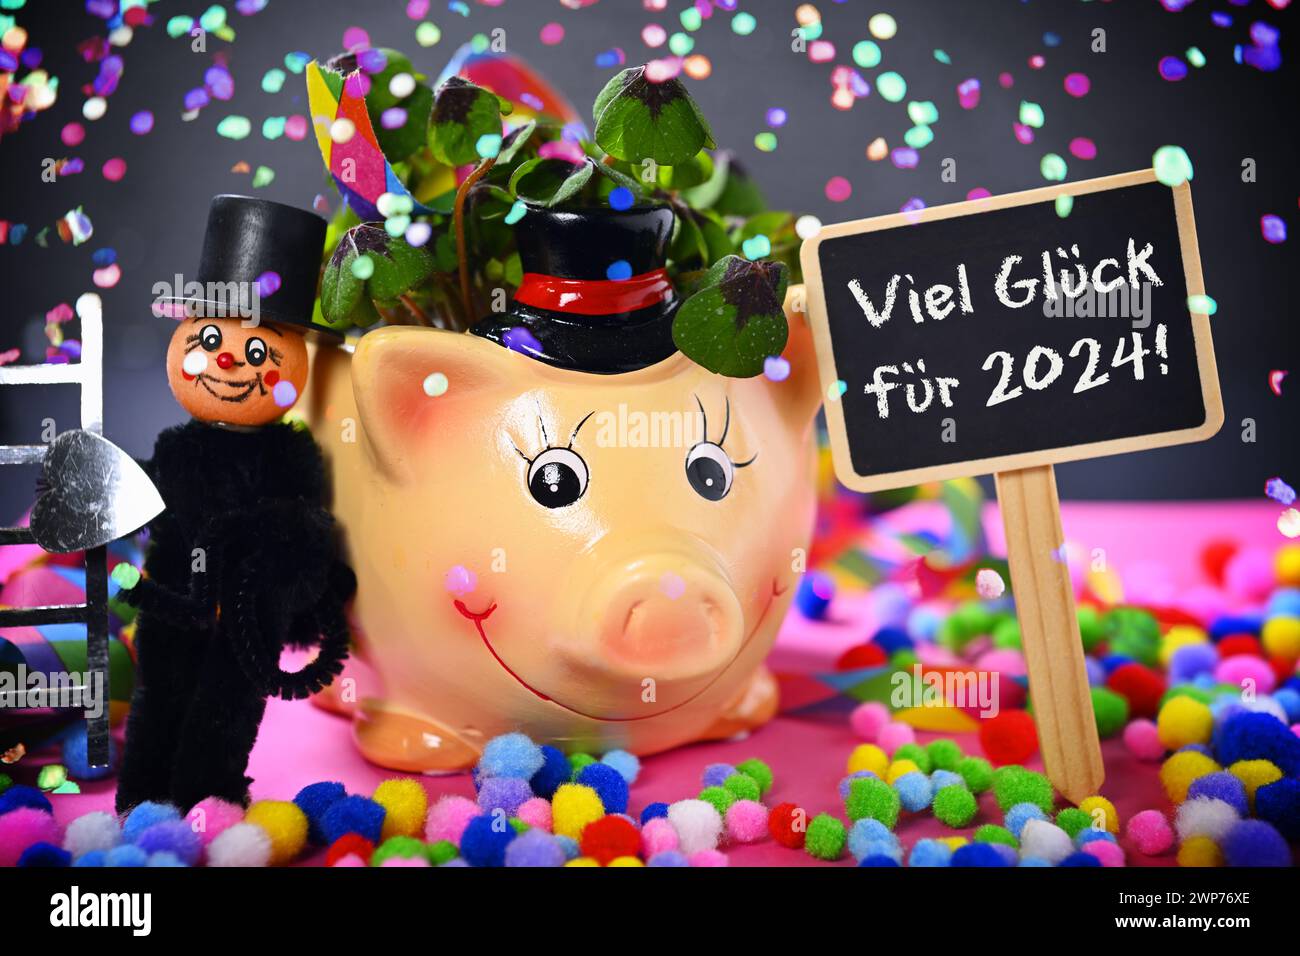 FOTOMONTAGE, Glücksschwein mit Kleeblättern, Schornsteinfegerfigur und Schild mit Aufschrift Viel Glück für 2024! mit Konfetti Stock Photo